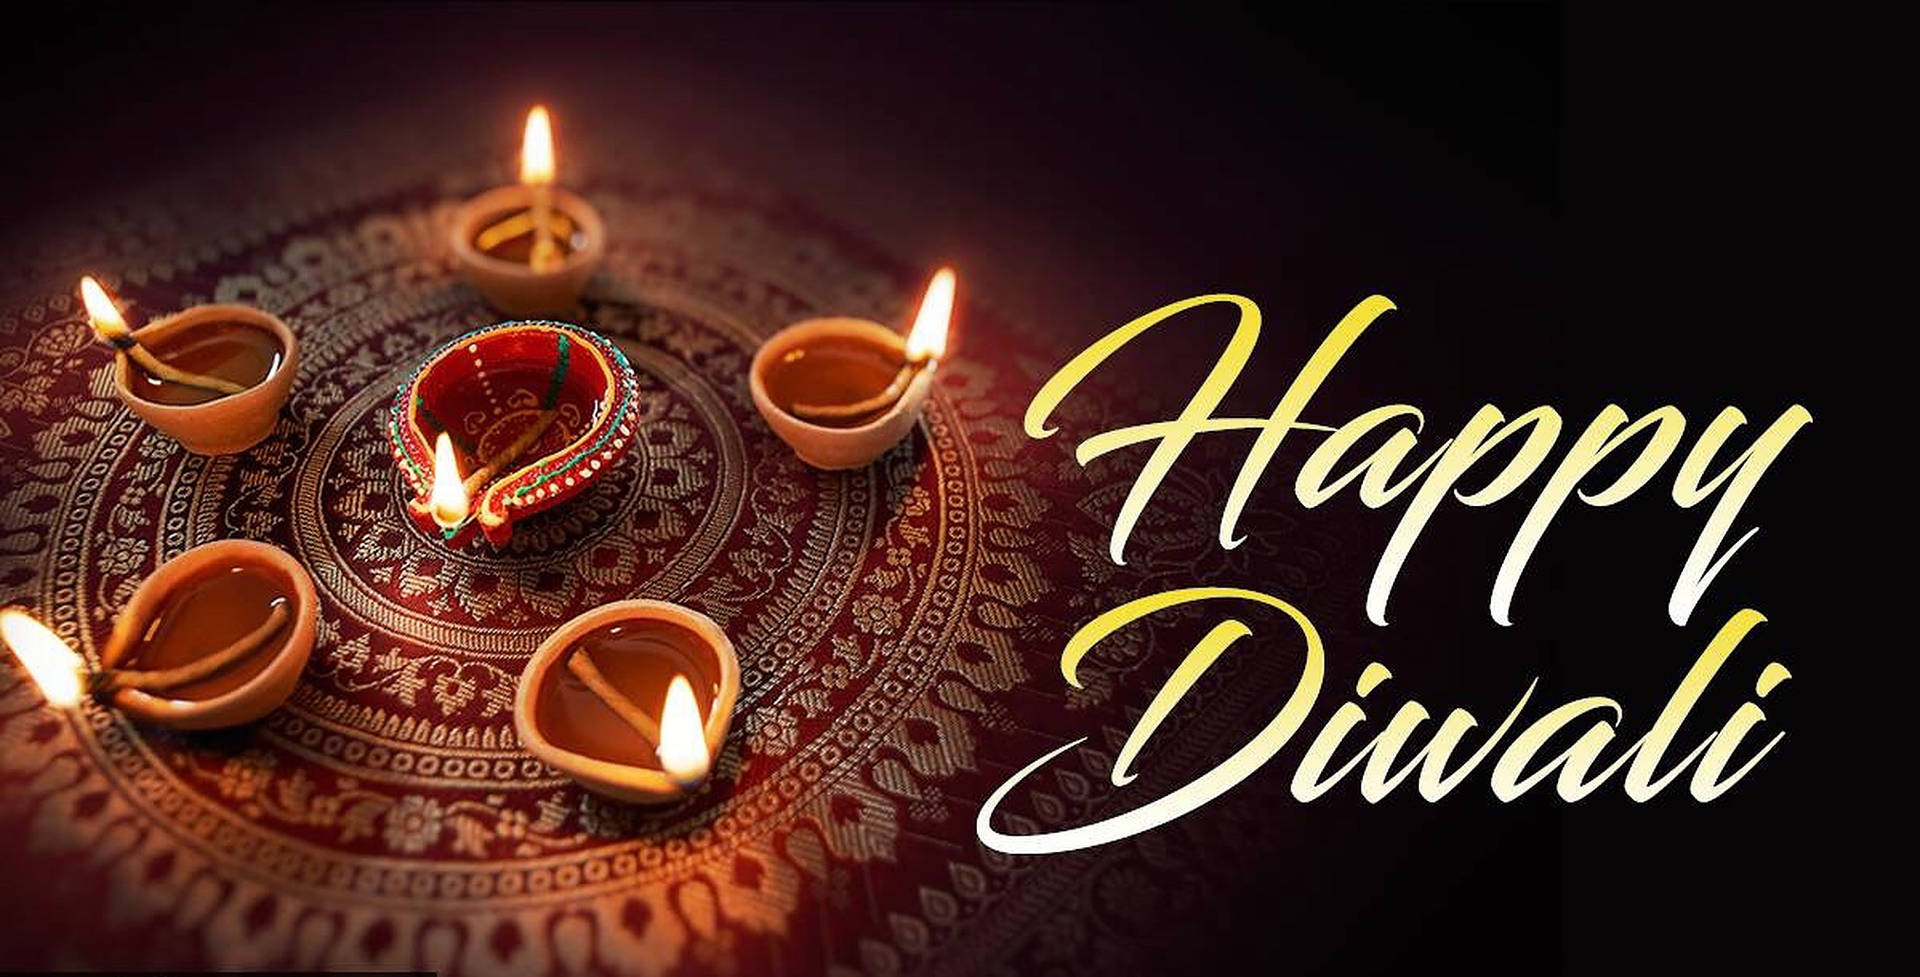 Gleaming Diyas - Enlightening The Spirit Of Diwali